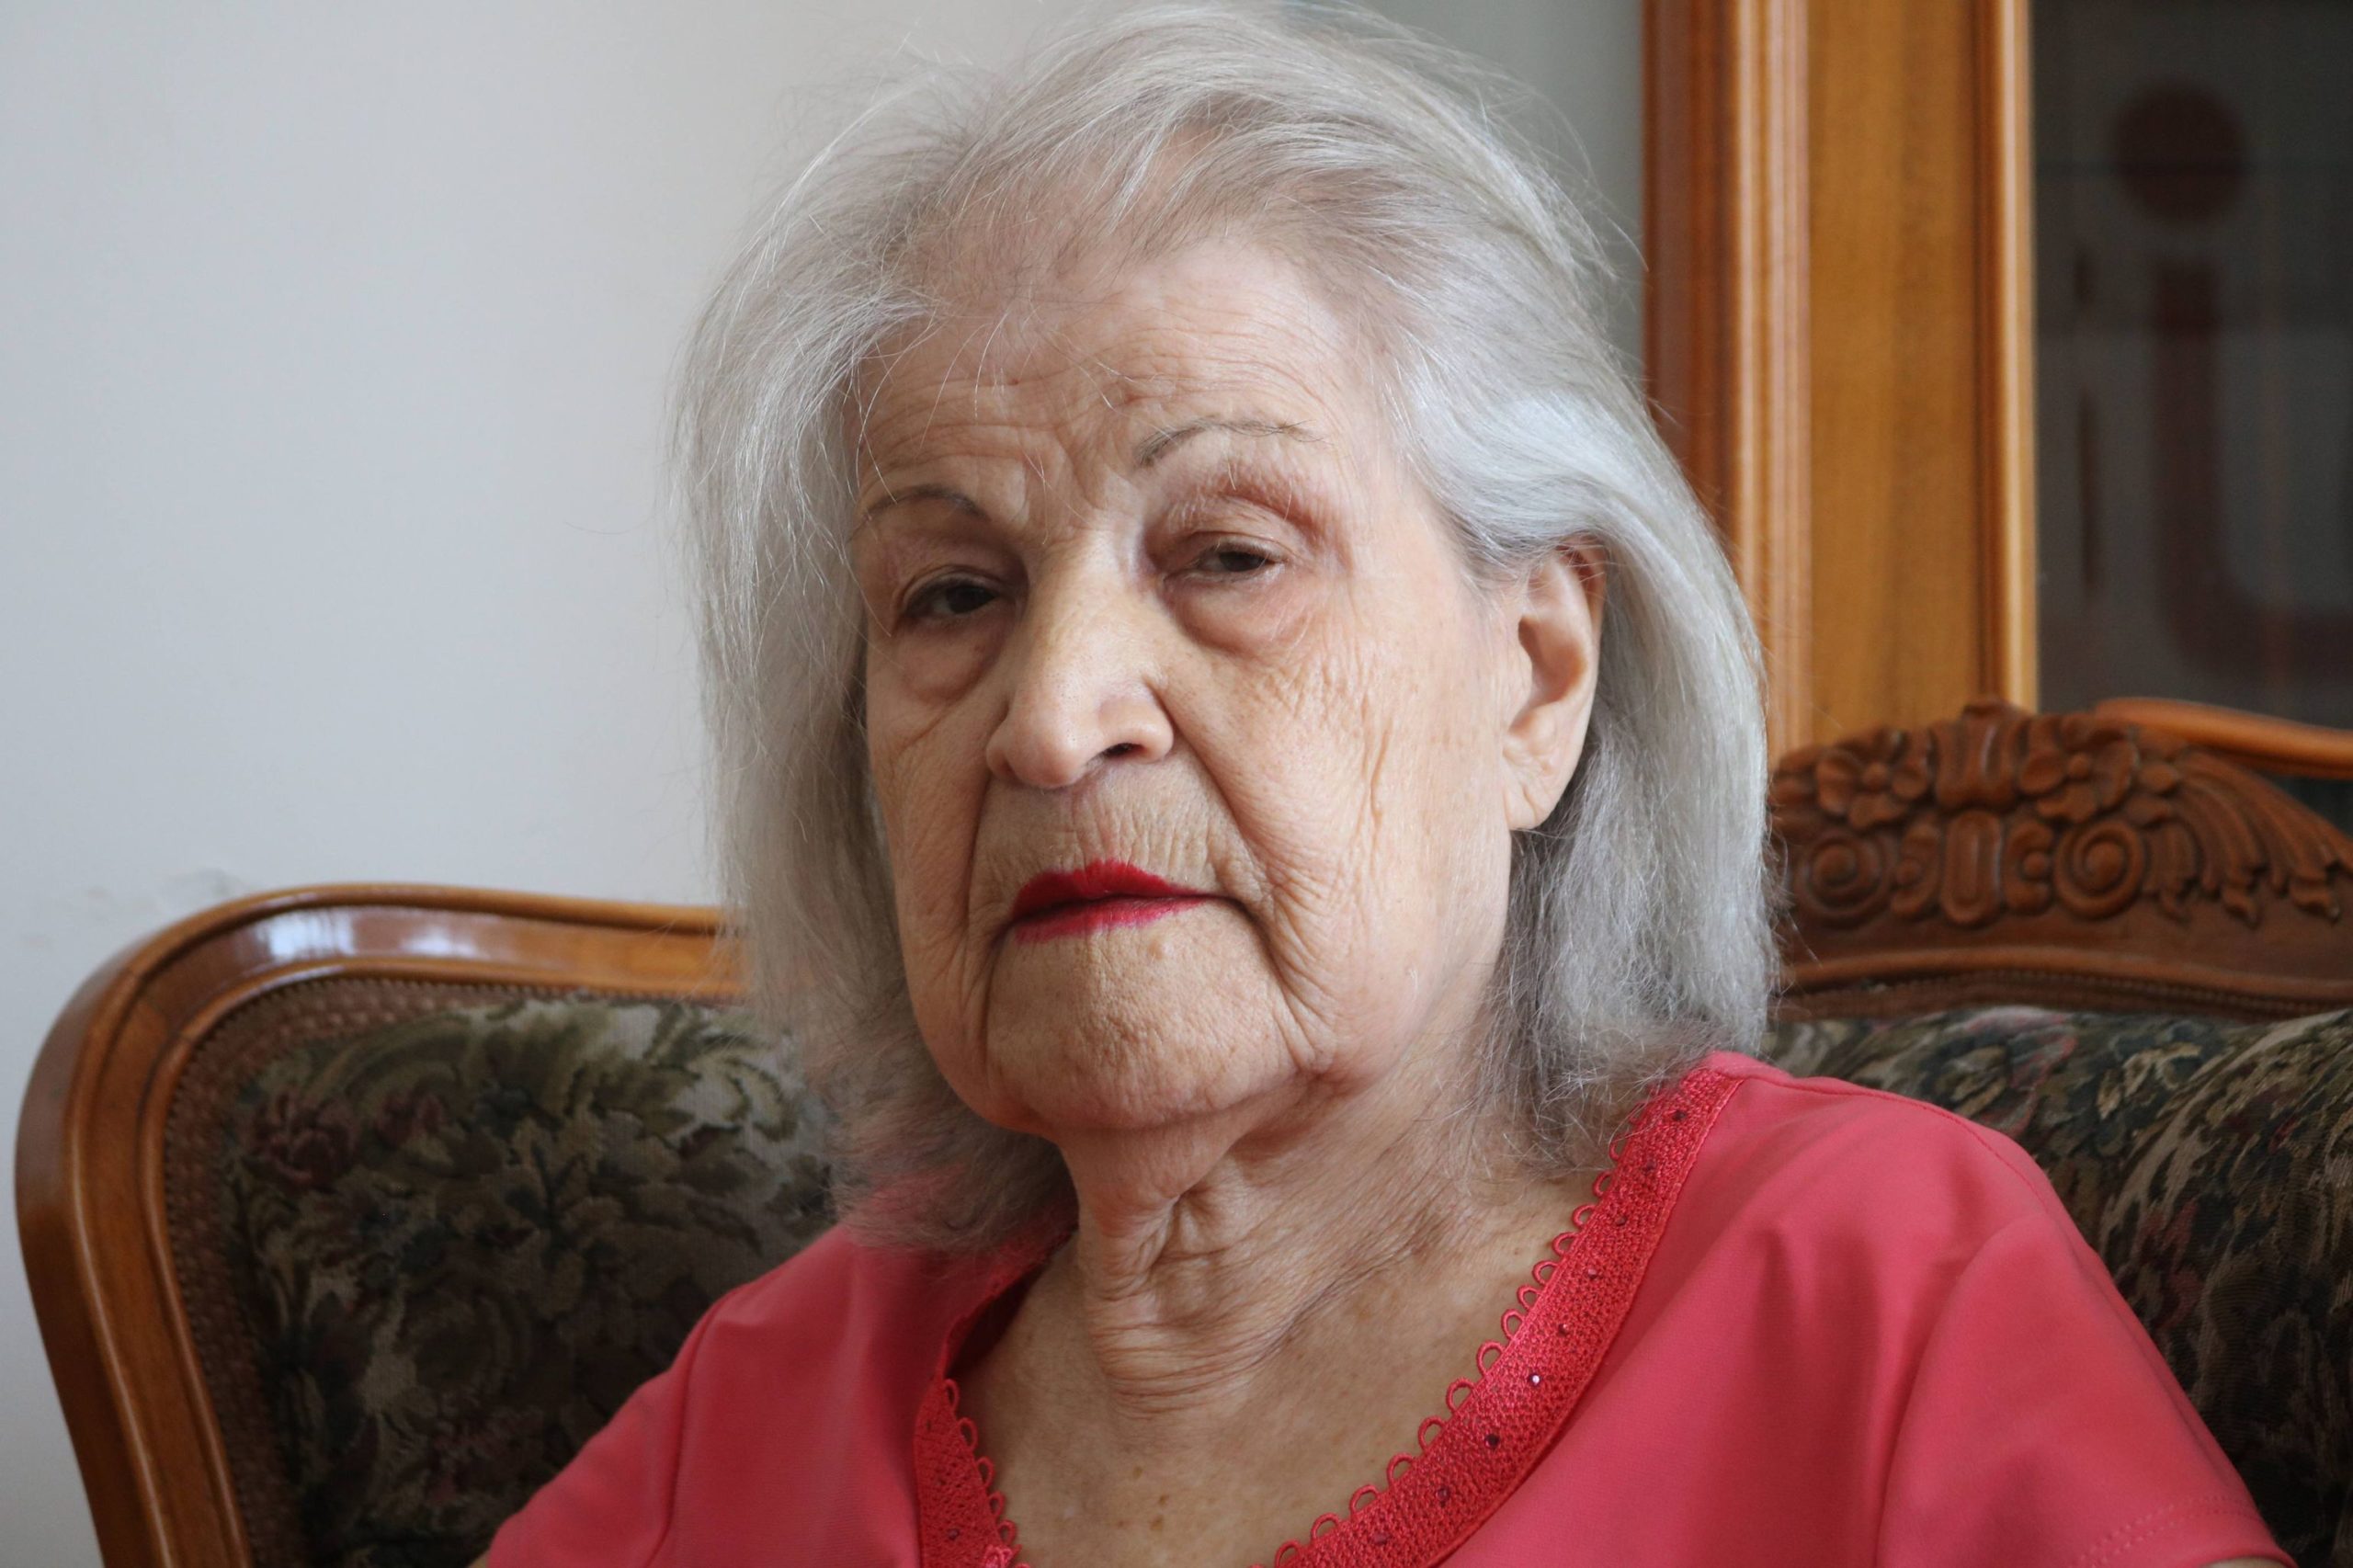 «Ուզում եմ, գոնե մինչև մեռնելս դրանց պատիժը տեսնեմ».89-ամյա կնոջ բողոքներն անտեսվում են